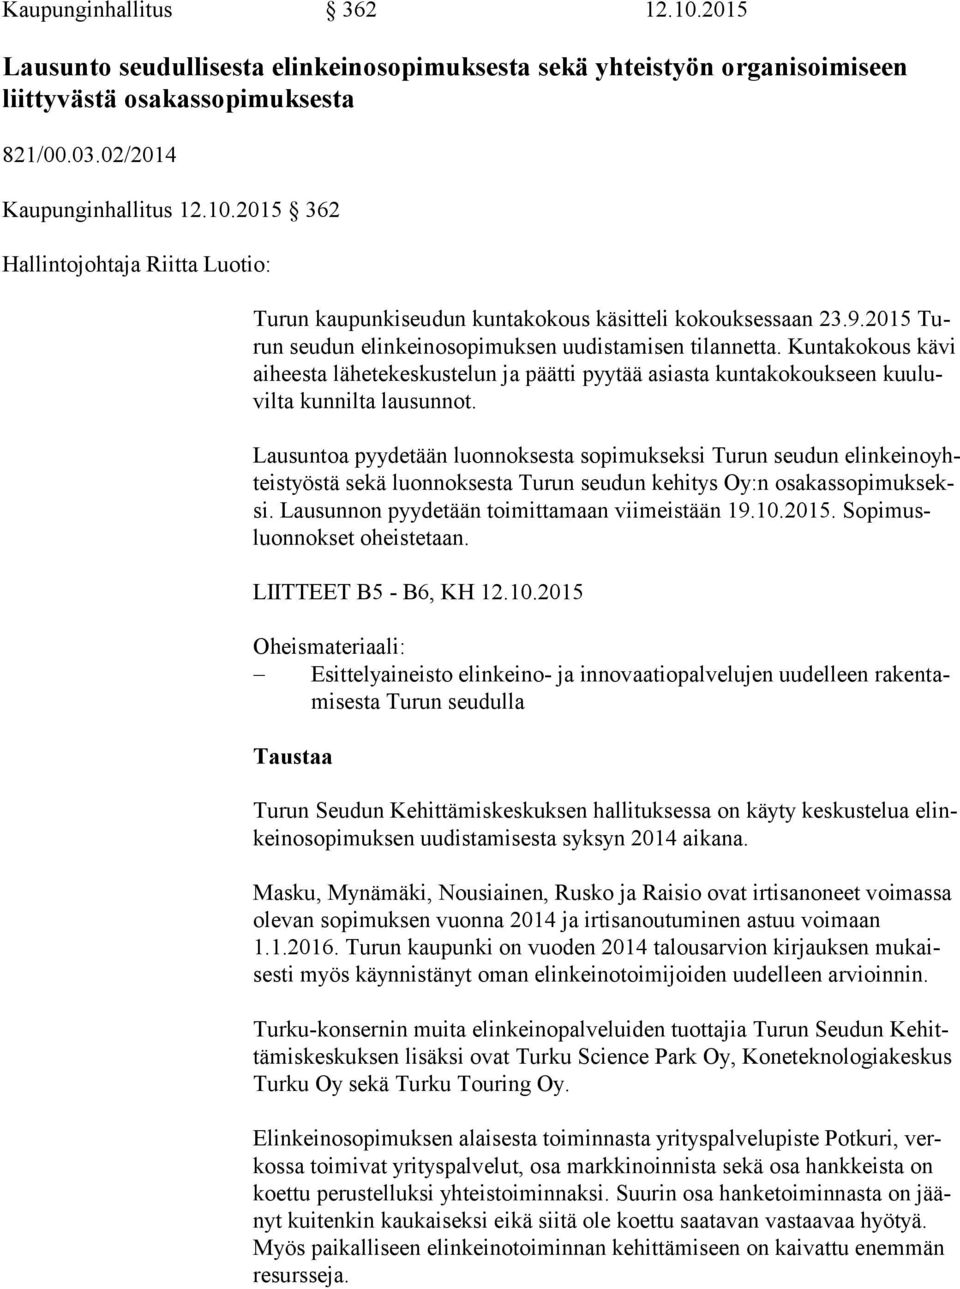 Lausuntoa pyydetään luonnoksesta sopimukseksi Turun seudun elin kei no yhteis työs tä sekä luonnoksesta Turun seudun kehitys Oy:n osa kas so pi muk seksi.